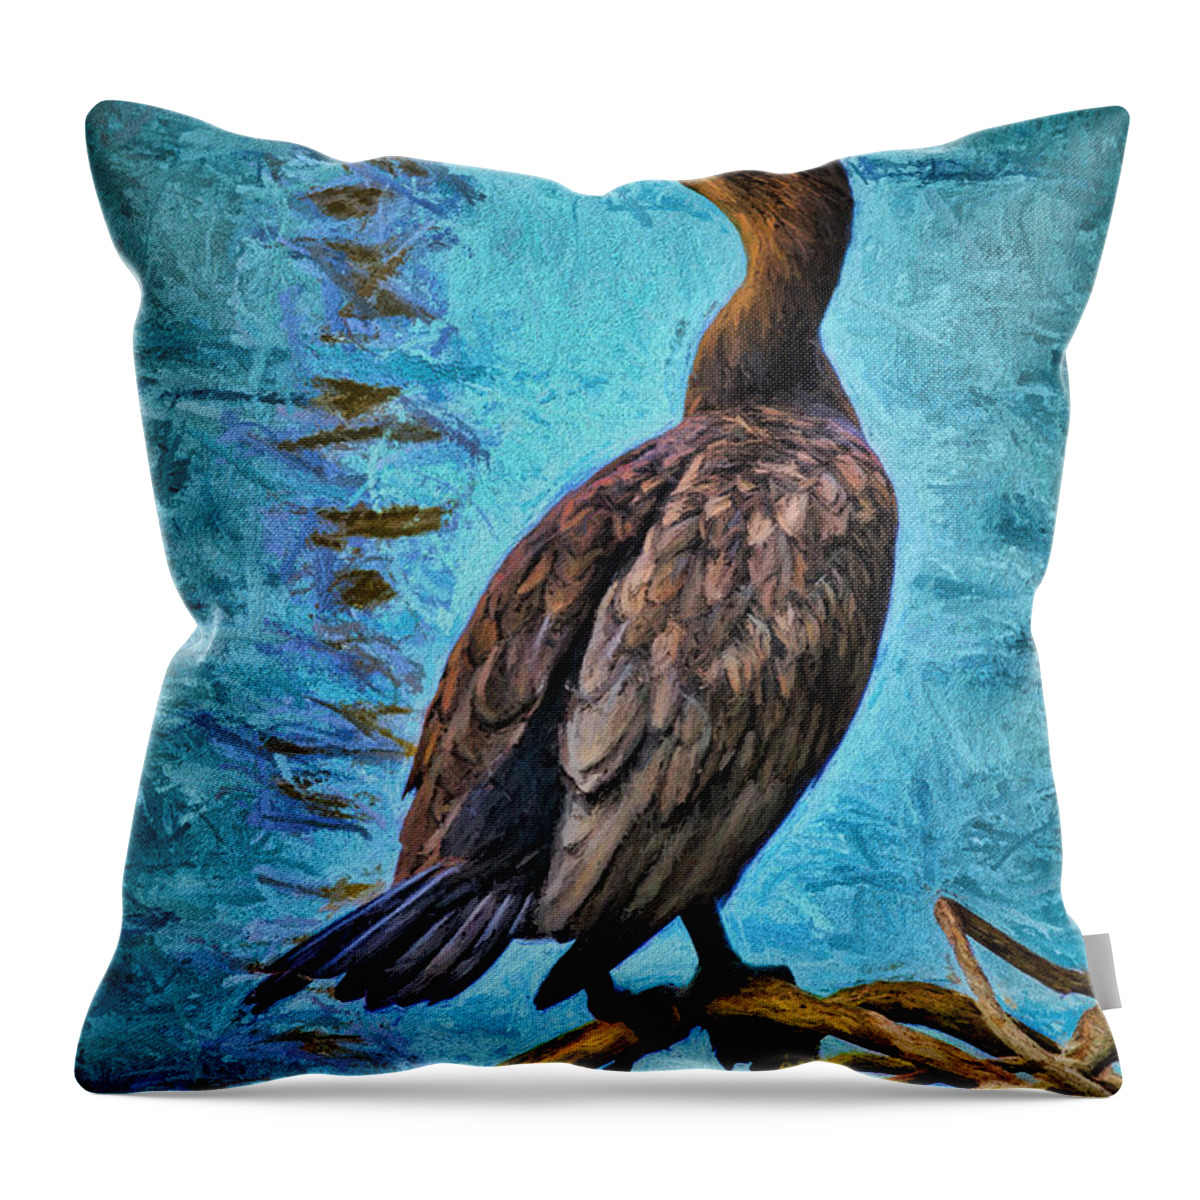 Deborah Benoit Throw Pillow featuring the painting Bird On A Limb by Deborah Benoit